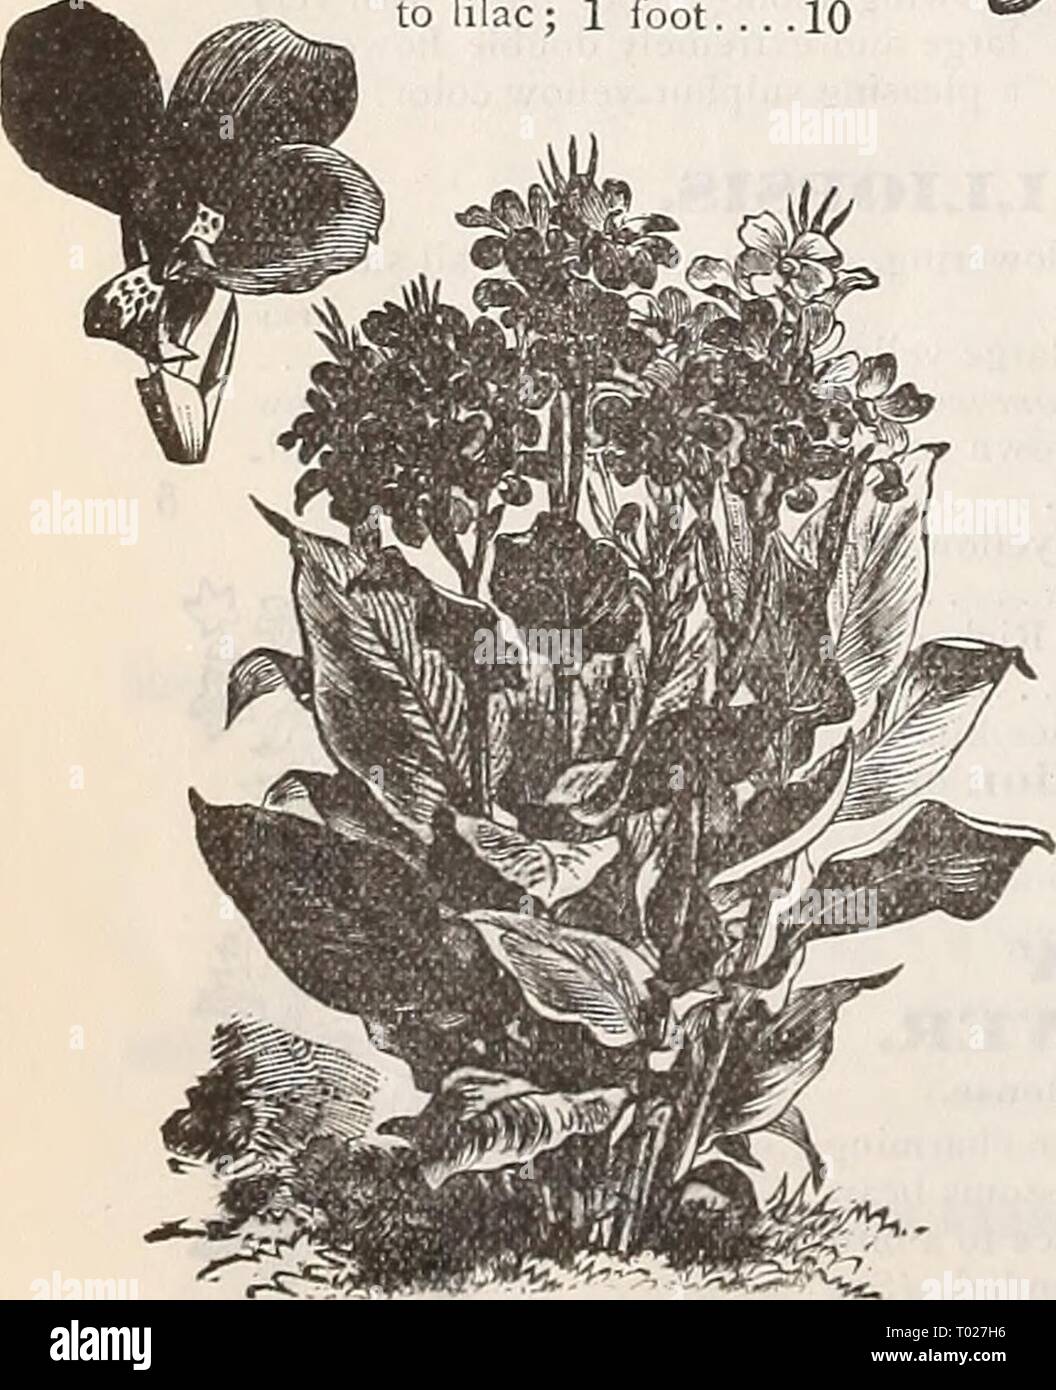 Dreer's garden calendario : 1898 . dreersgardencale1898henr Año: 1898 La emperatriz Cani&GT;vtuft. 5383 5387 Wliite. 6 pulgadas '. 5 D warf híbridos, mixtos. 6 pulgadas 10 HARDY CANDYTUFTS perennes. (Iberis). Por pit. 5388 Sempervireiis. Una profusa floración blanca hardy perenne, adaptada para el rock- Erie, cestas, etc., procedentes de flores en el pie soring ; 1 .' 10 5379 Gibraltarica Hy- brida. Especies muy fino con flores blancas, el sombreado a lila; 1 pie. . . .10 Foto de stock